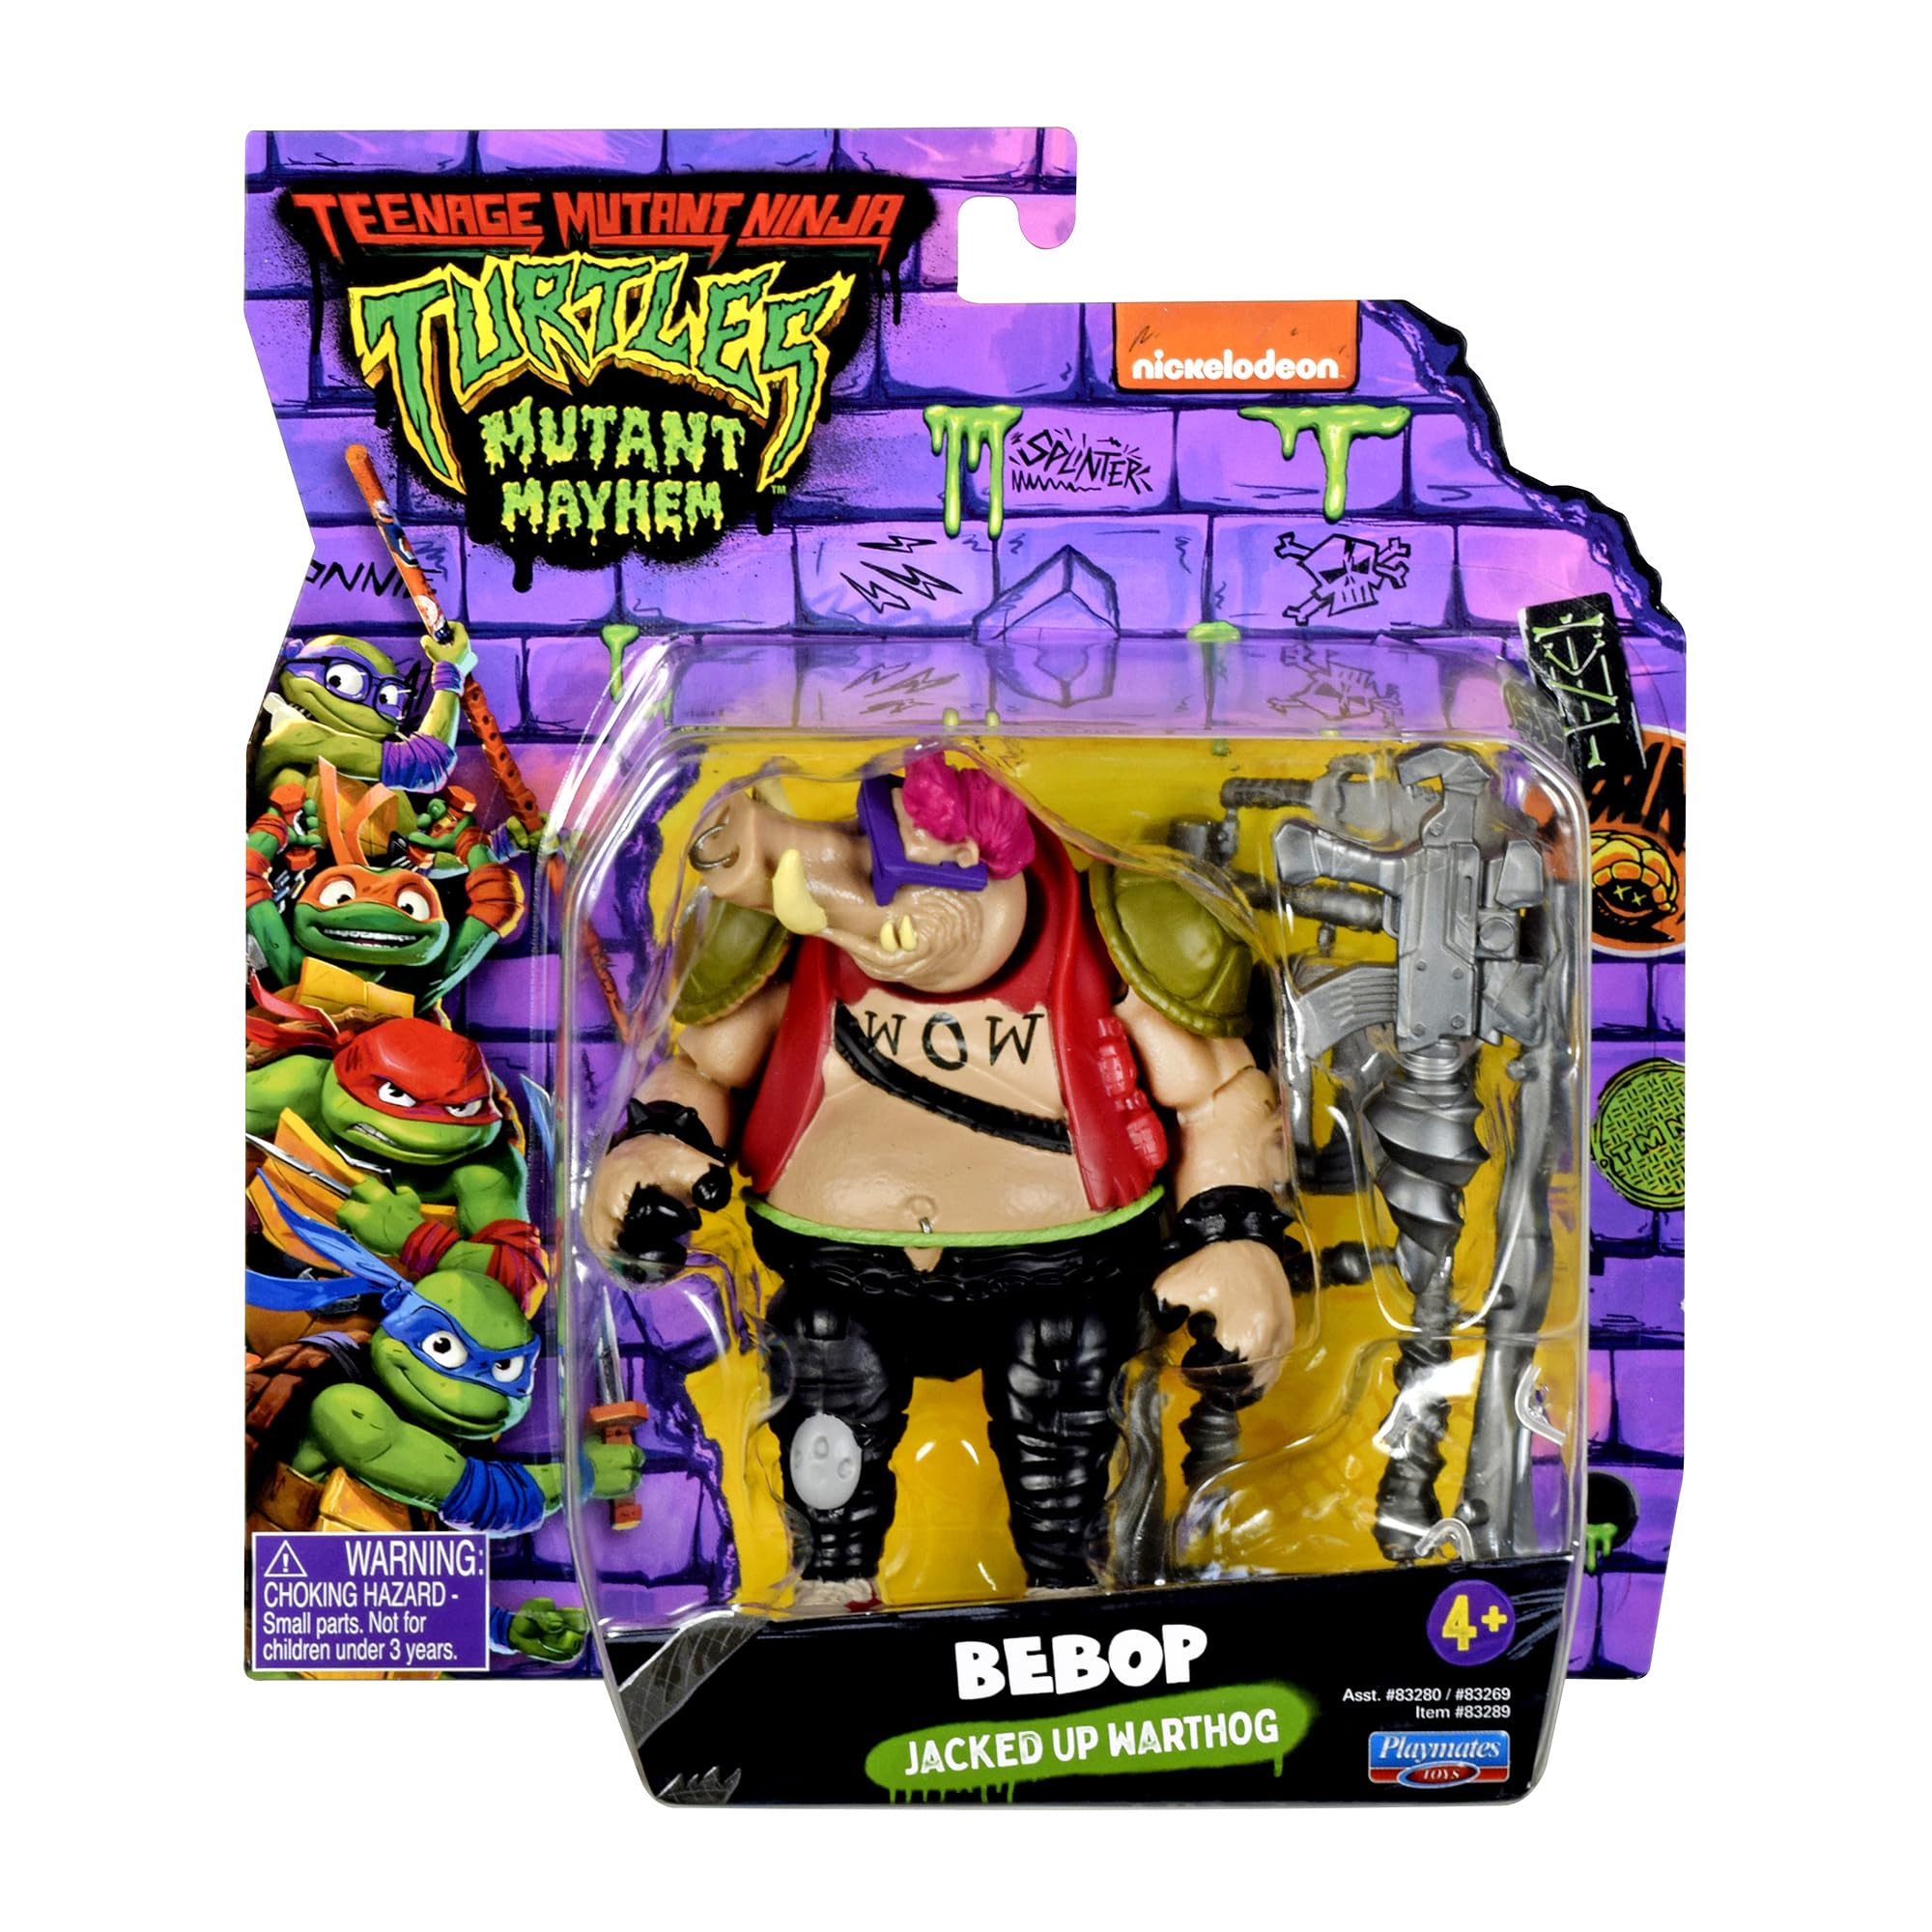 Teenage Mutant Ninja Turtles: Mutant Mayhem 4.5” Bebop Basic Action Figure by Playmates Toys